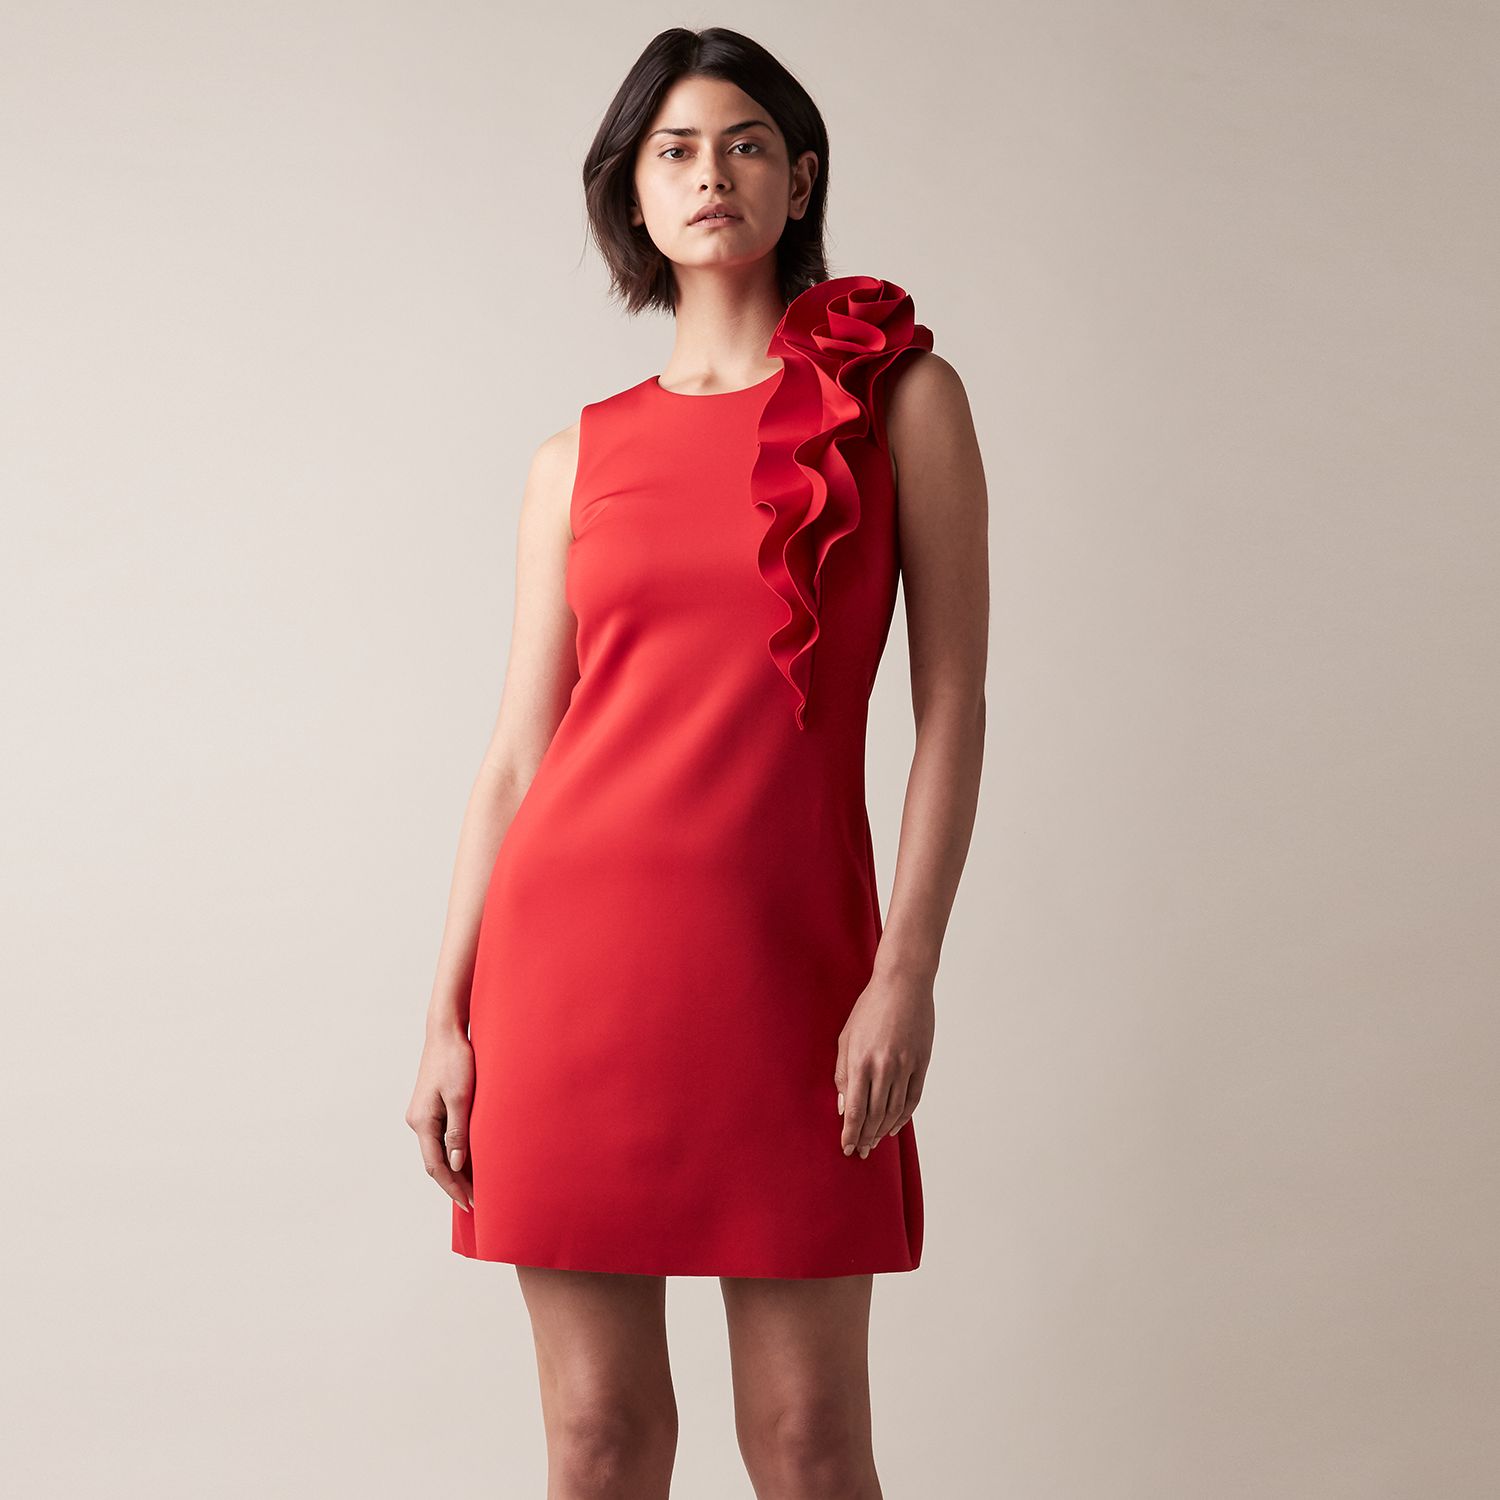 Kohls Womens Red Dresses Online Hotsell ...